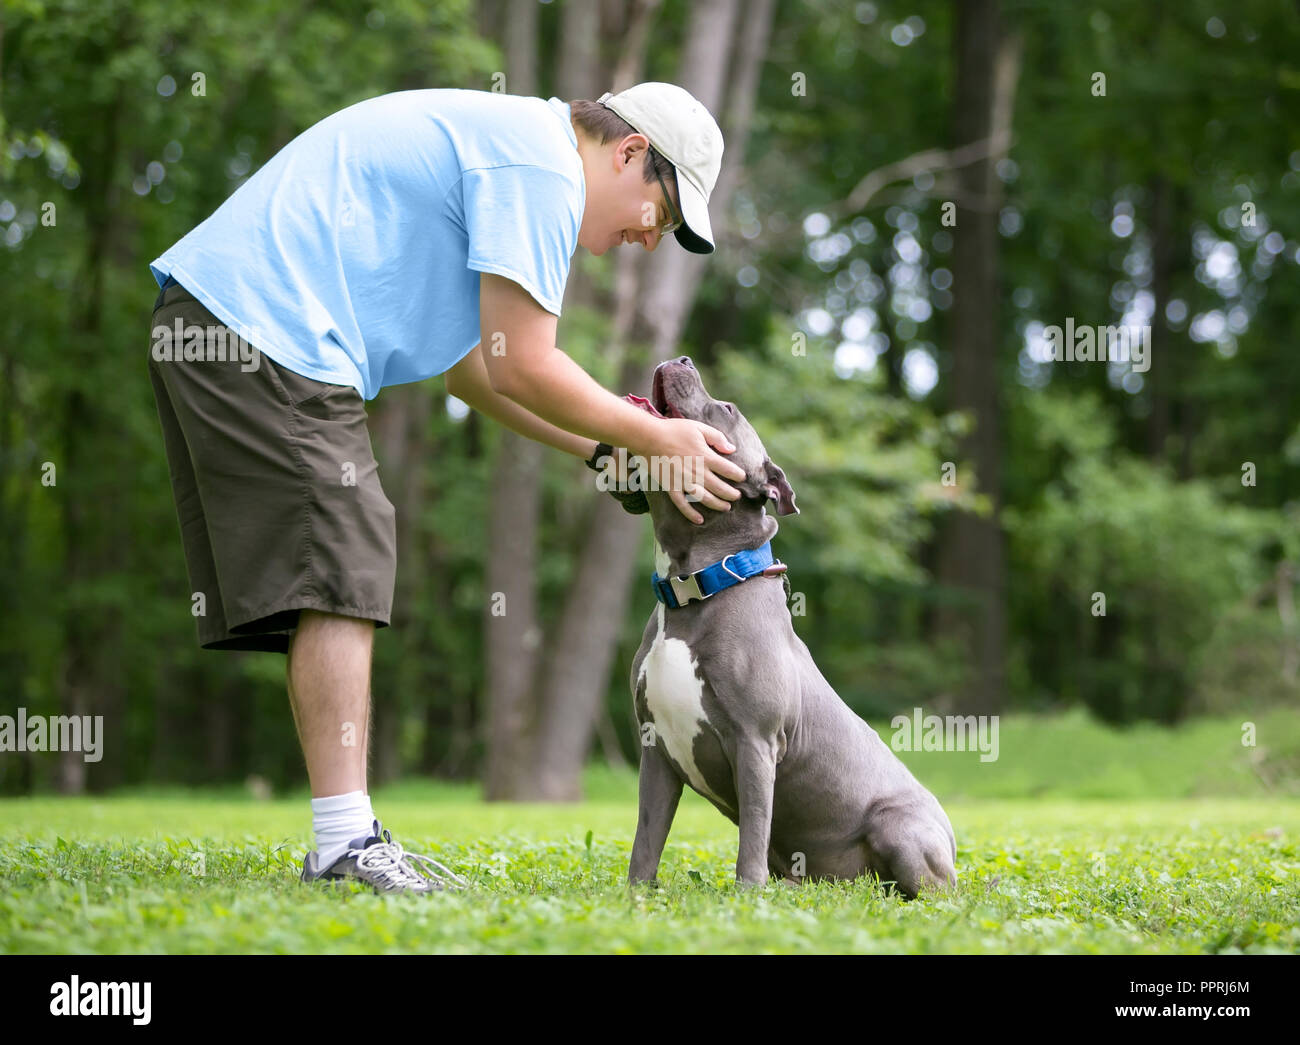 Eine Person petting einen grauen und weißen Grube Stier Terrier Mischling Hund im Freien Stockfoto